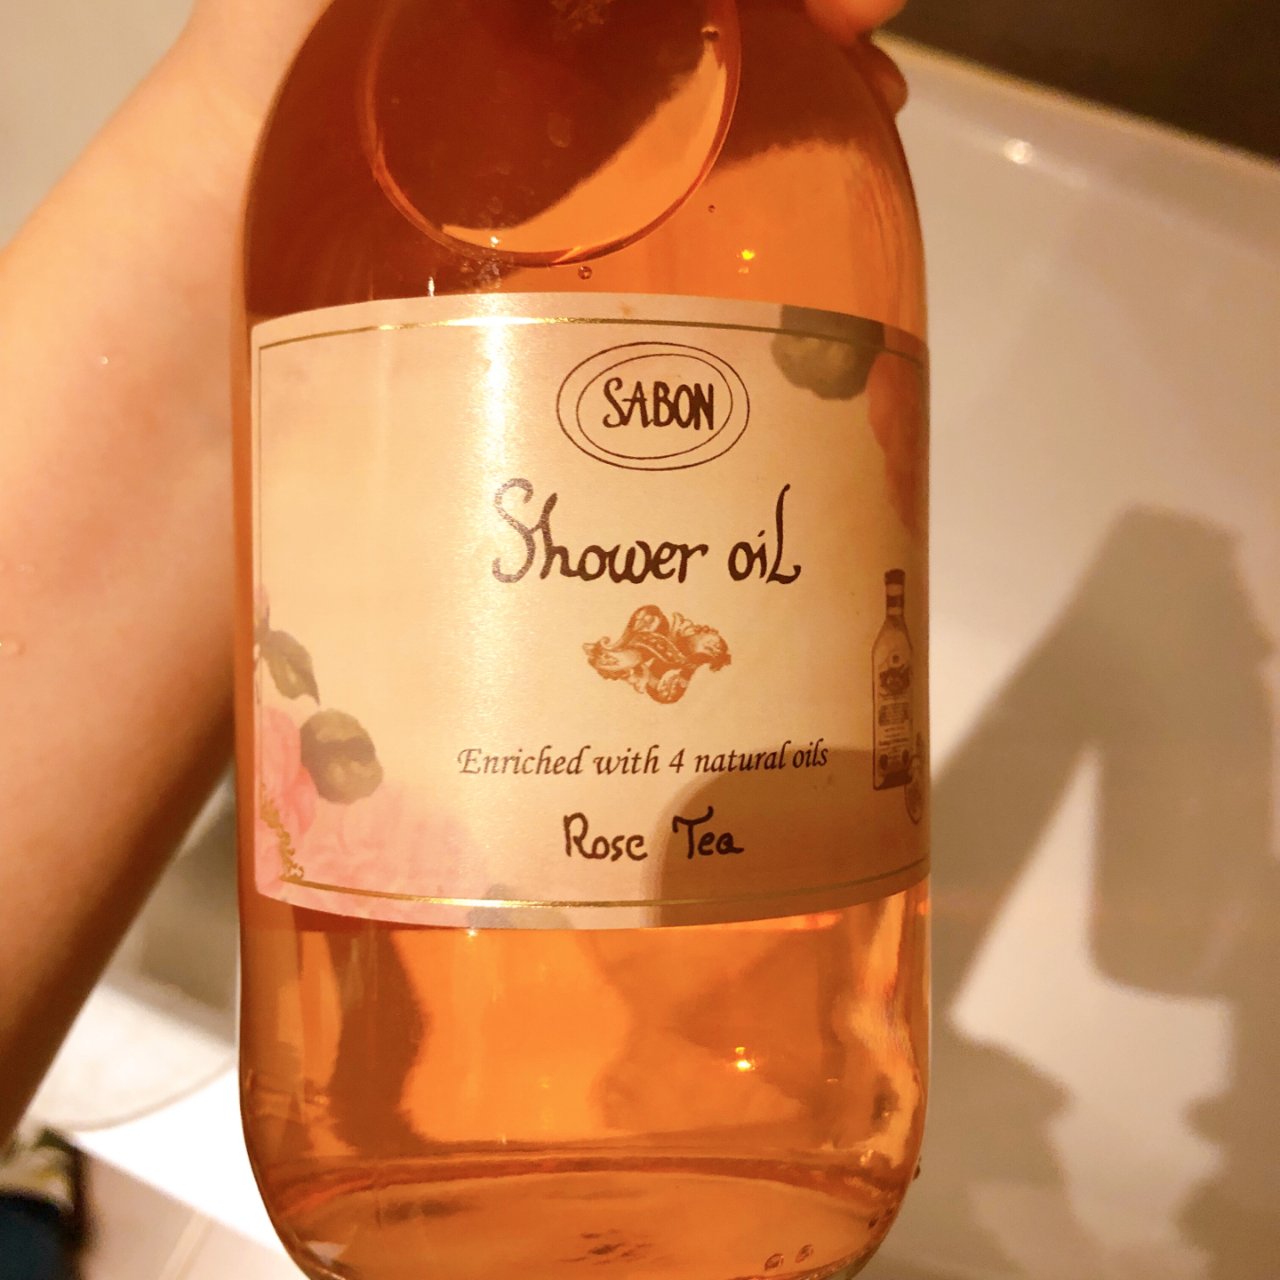 sabon 玫瑰茶味道的沐浴液...